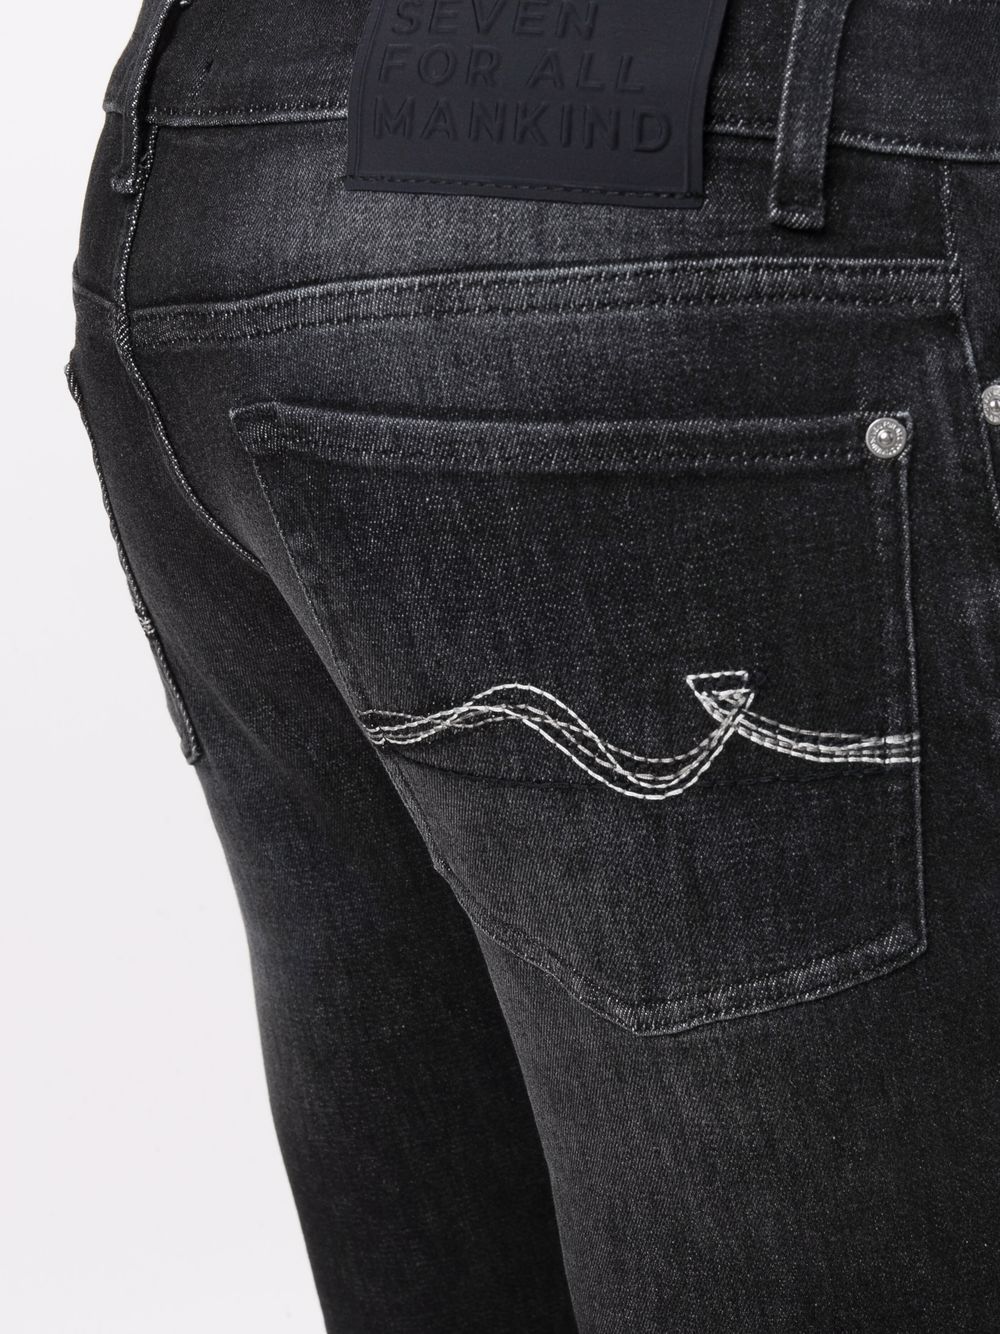 фото 7 for all mankind джинсы скинни с заниженной талией